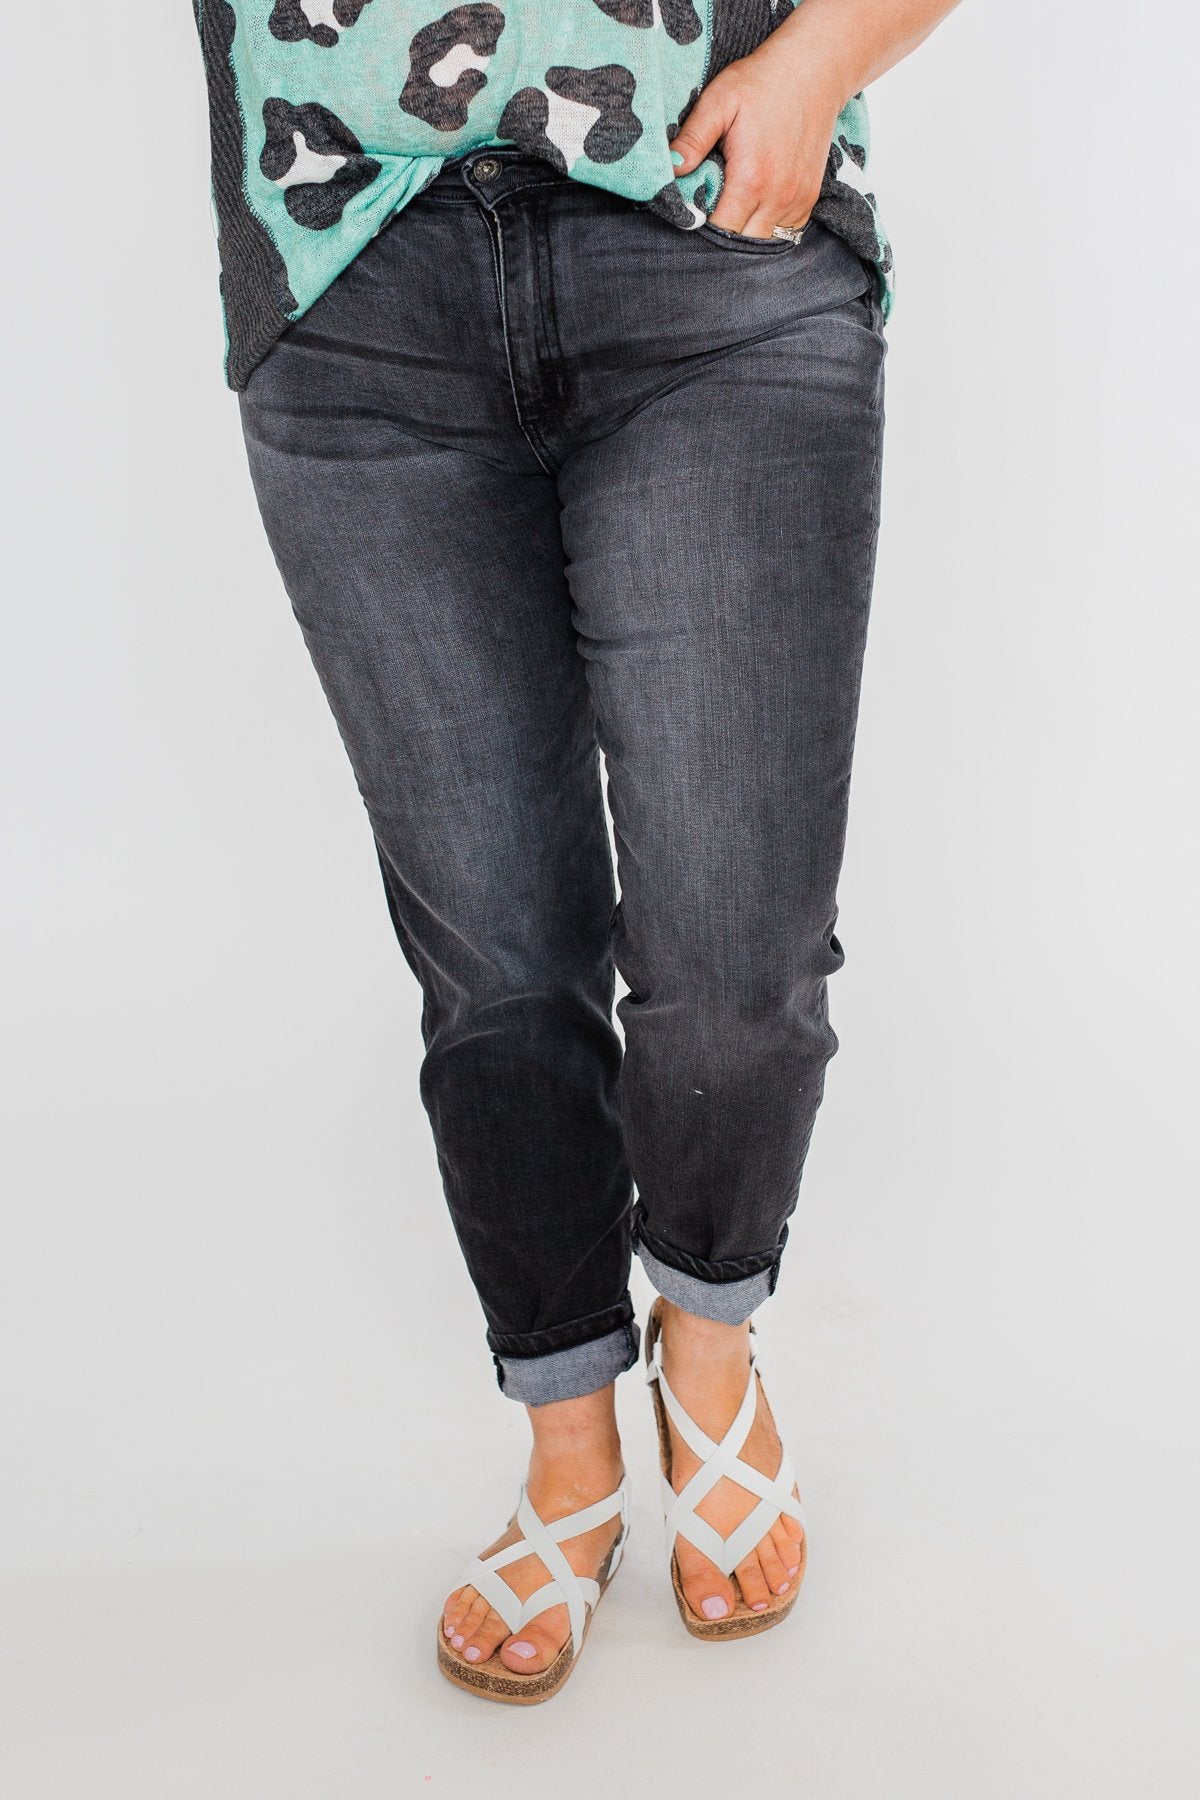 Sneak Peek Jeans- Madelyn Wash